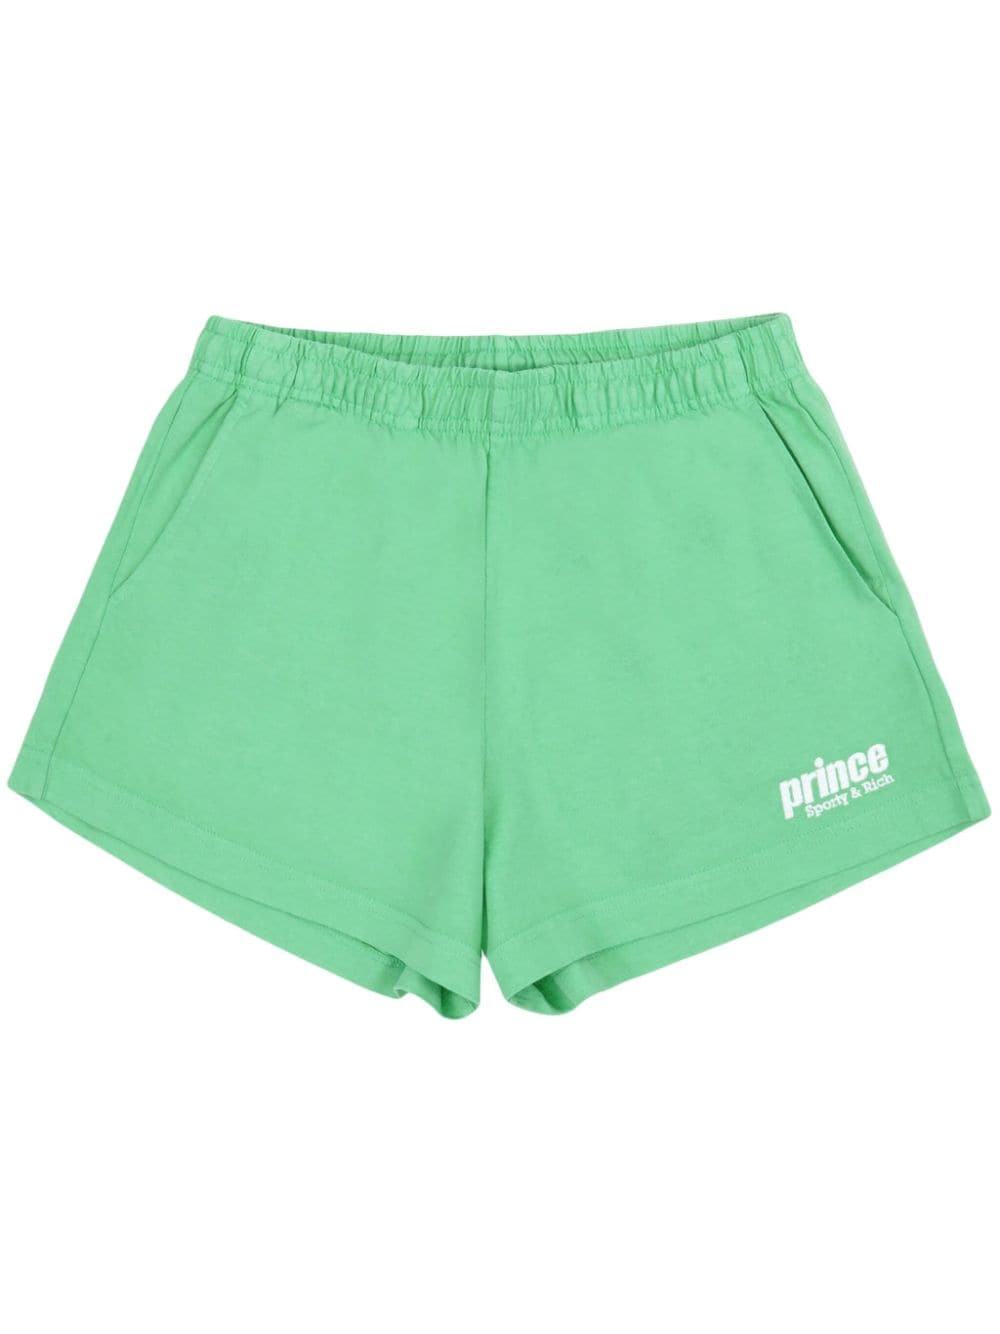 Sporty & Rich x Prince Disco cotton shorts - Green von Sporty & Rich